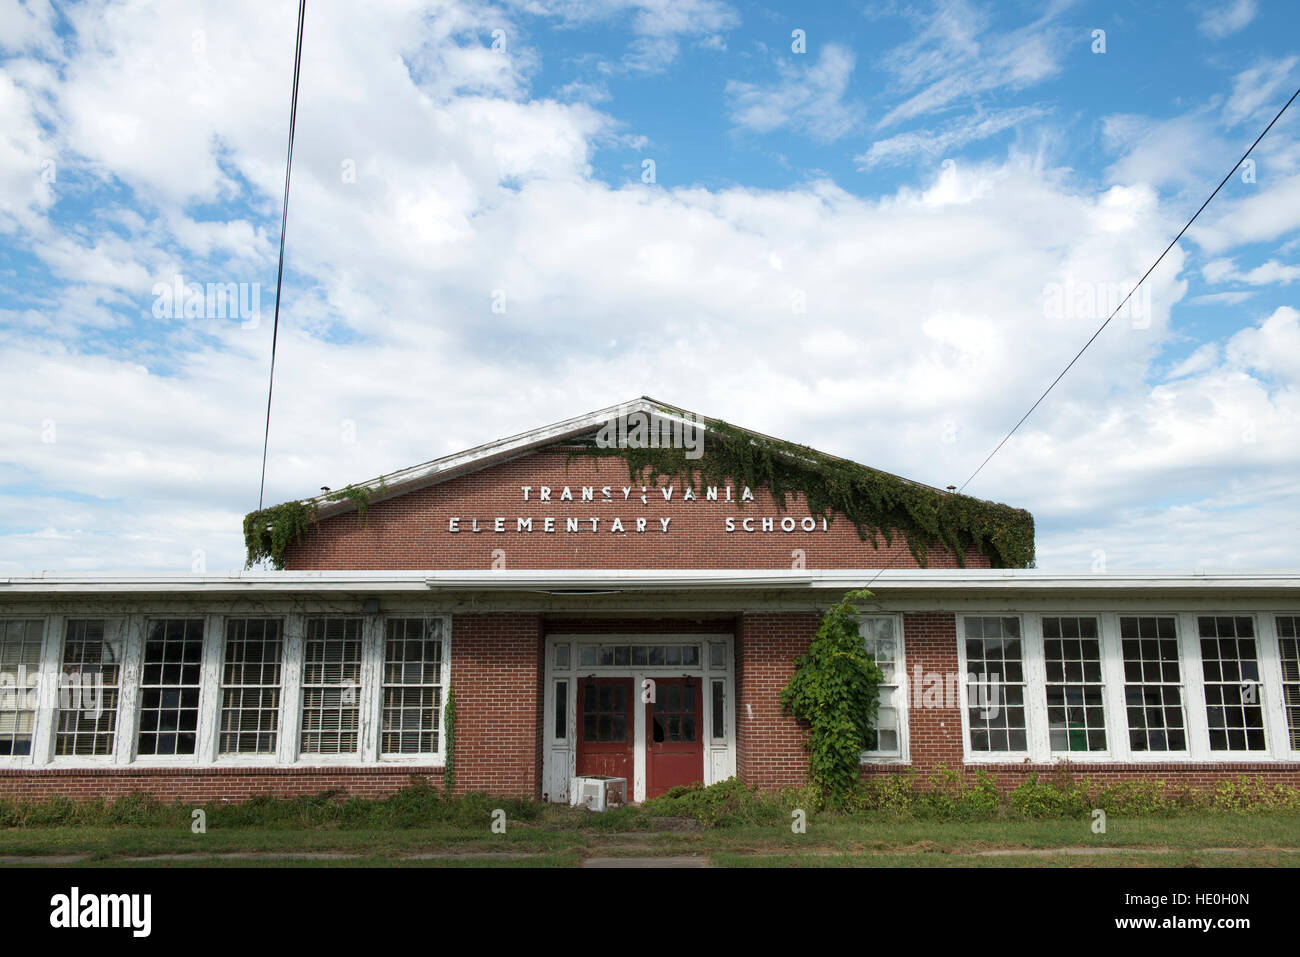 The abandoned elementary school in Transylvania, Louisiana. Stock Photo